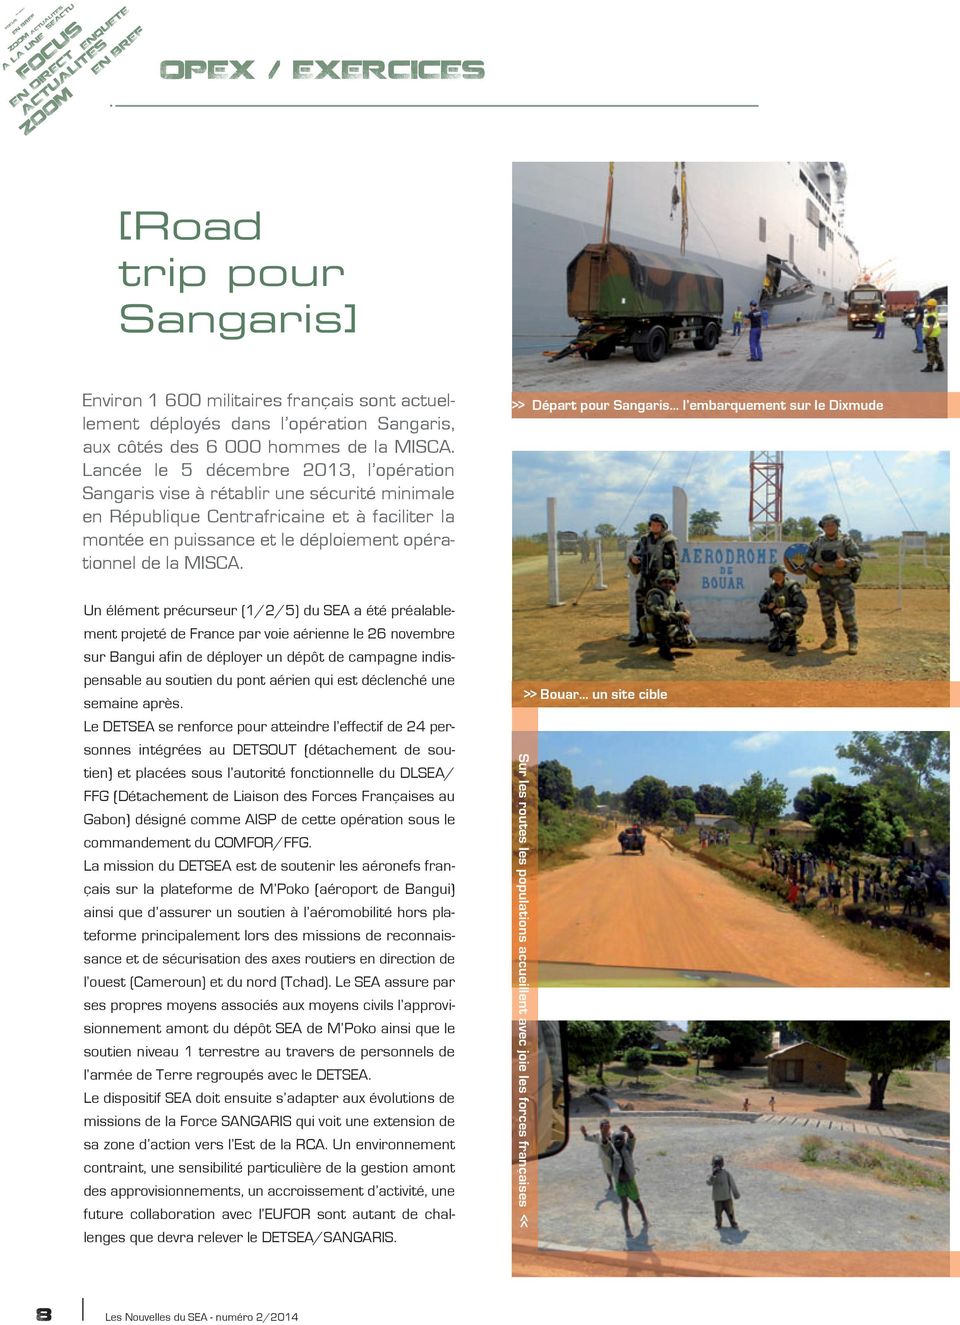 Lancée le 5 décembre 2013, l opération Sangaris vise à rétablir une sécurité minimale en République Centrafricaine et à faciliter la montée en puissance et le déploiement opérationnel de la MISCA.